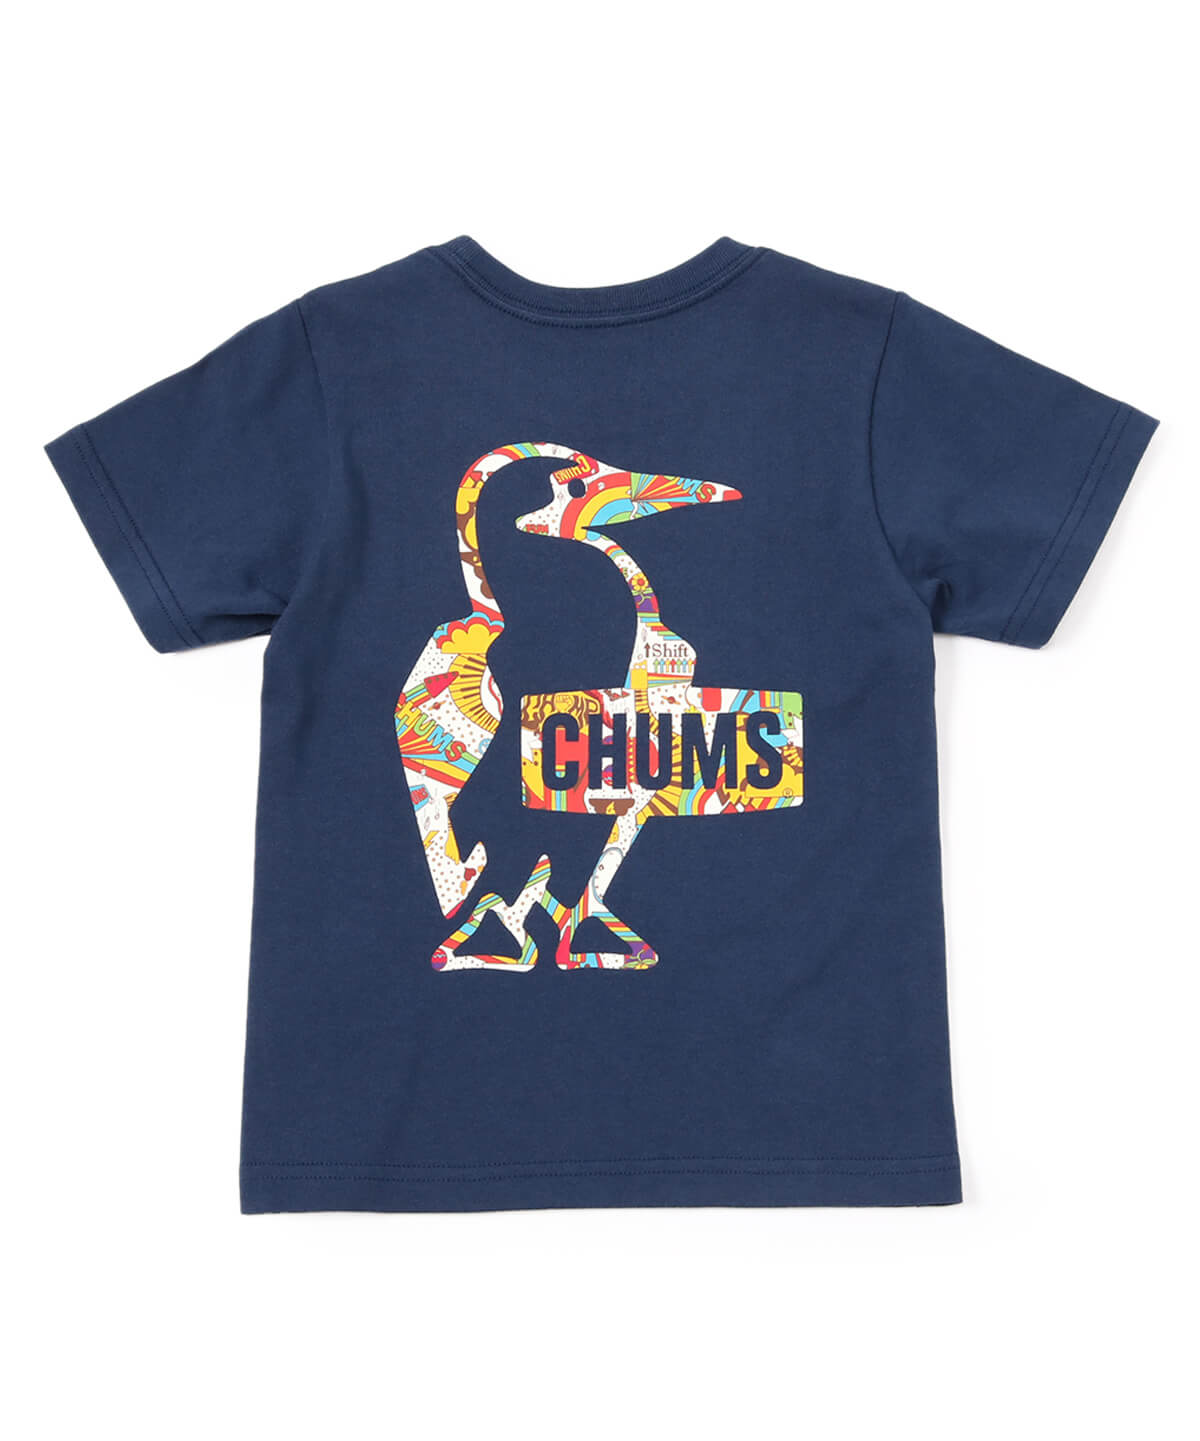 キッズウェア|CHUMS(チャムス)|アウトドアファッション公式通販